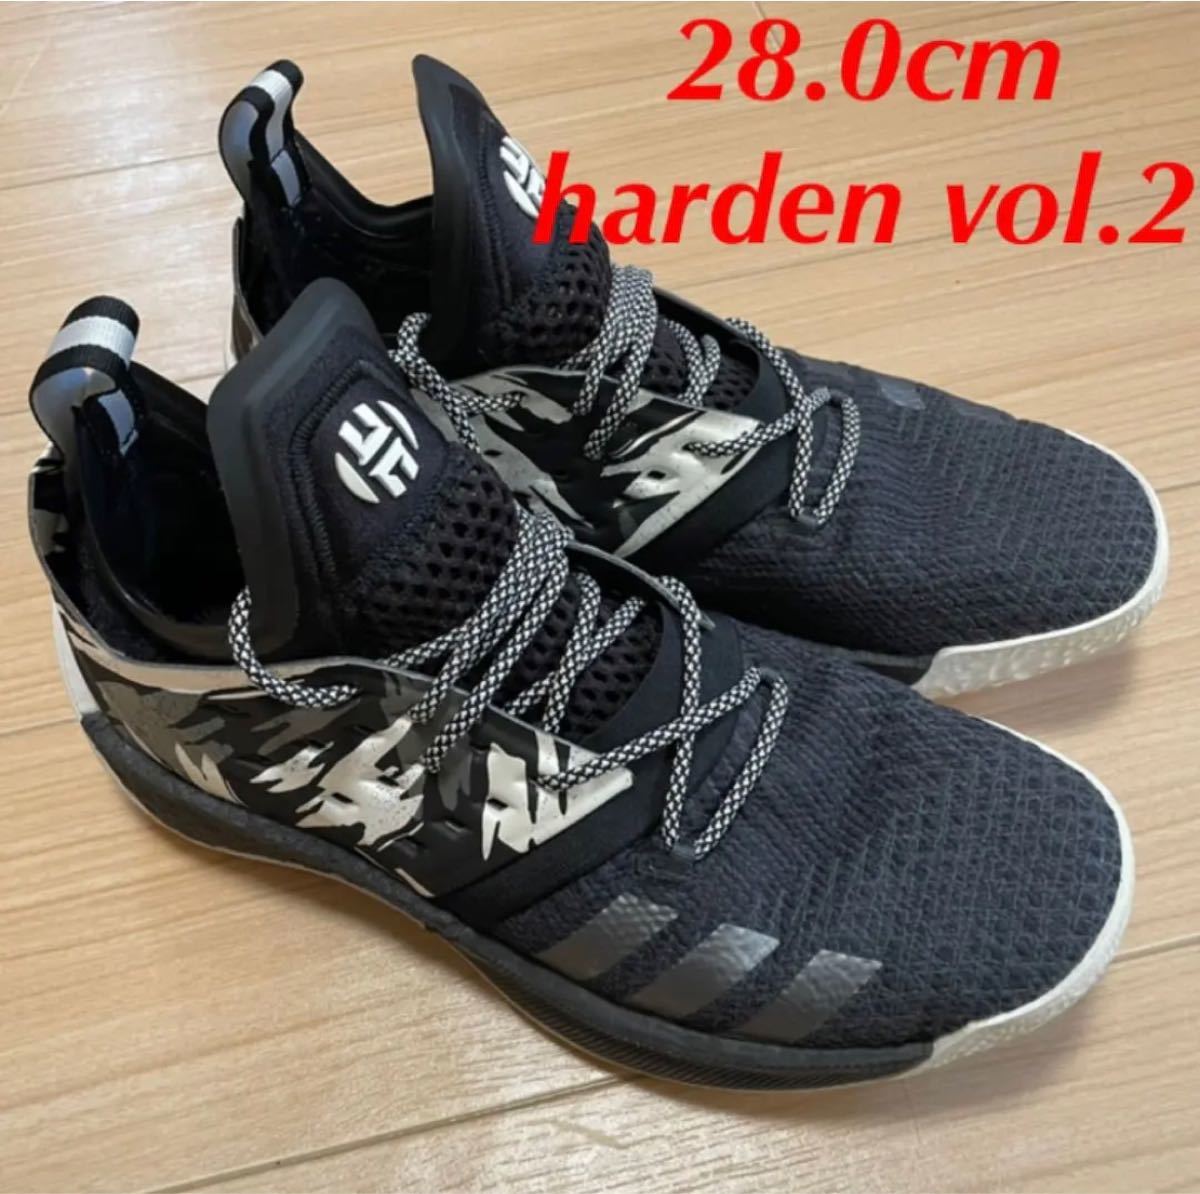 価格の相談 OK adidas harden vol 2 アディダス ハーデン 2 28 0cm